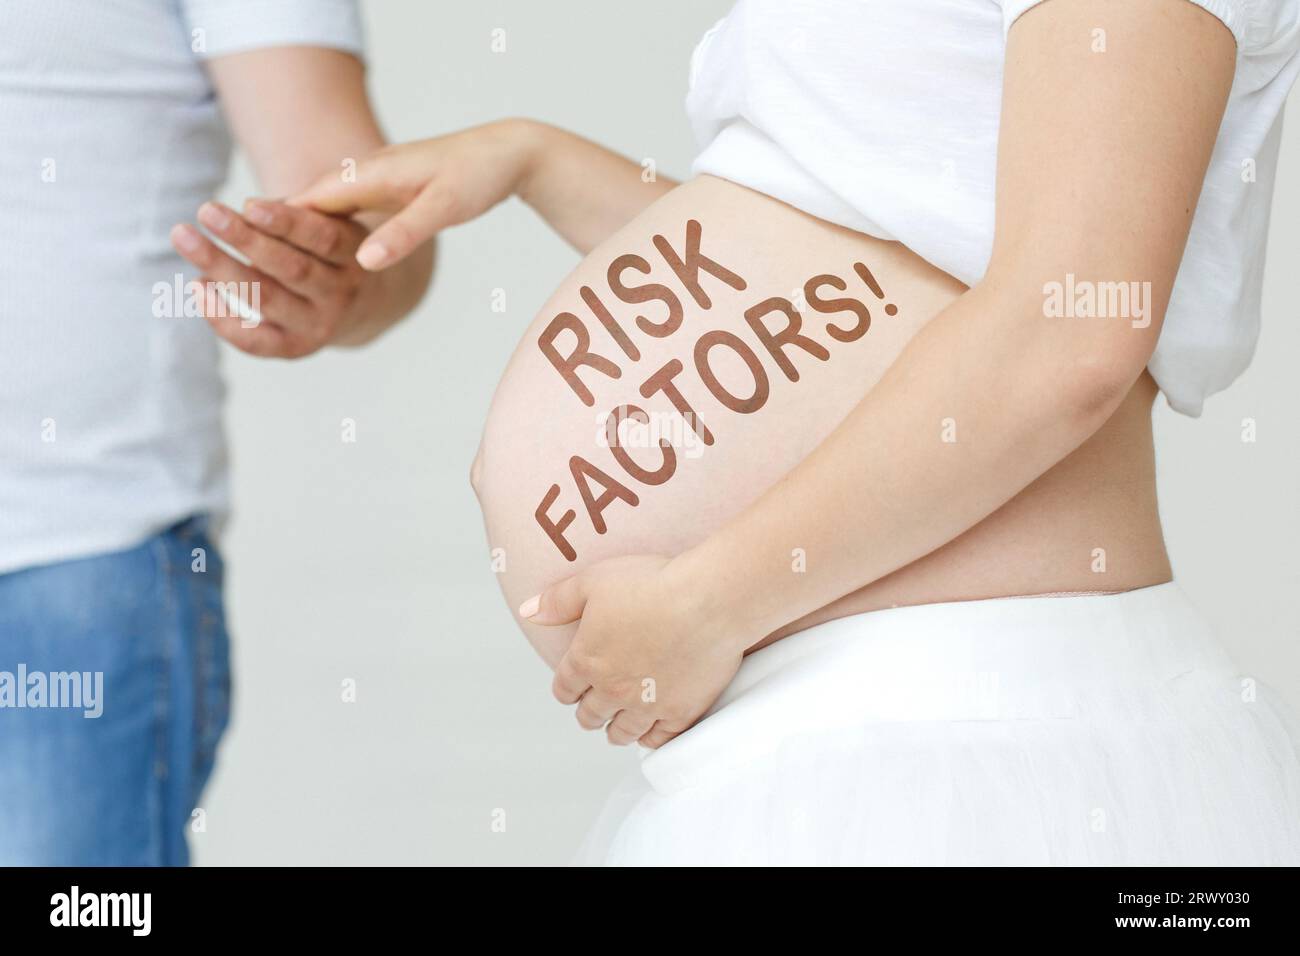 Una donna incinta tiene la mano del marito sullo stomaco con l'iscrizione - fattori di rischio, un punto esclamativo. Concetto di gravidanza. Foto Stock